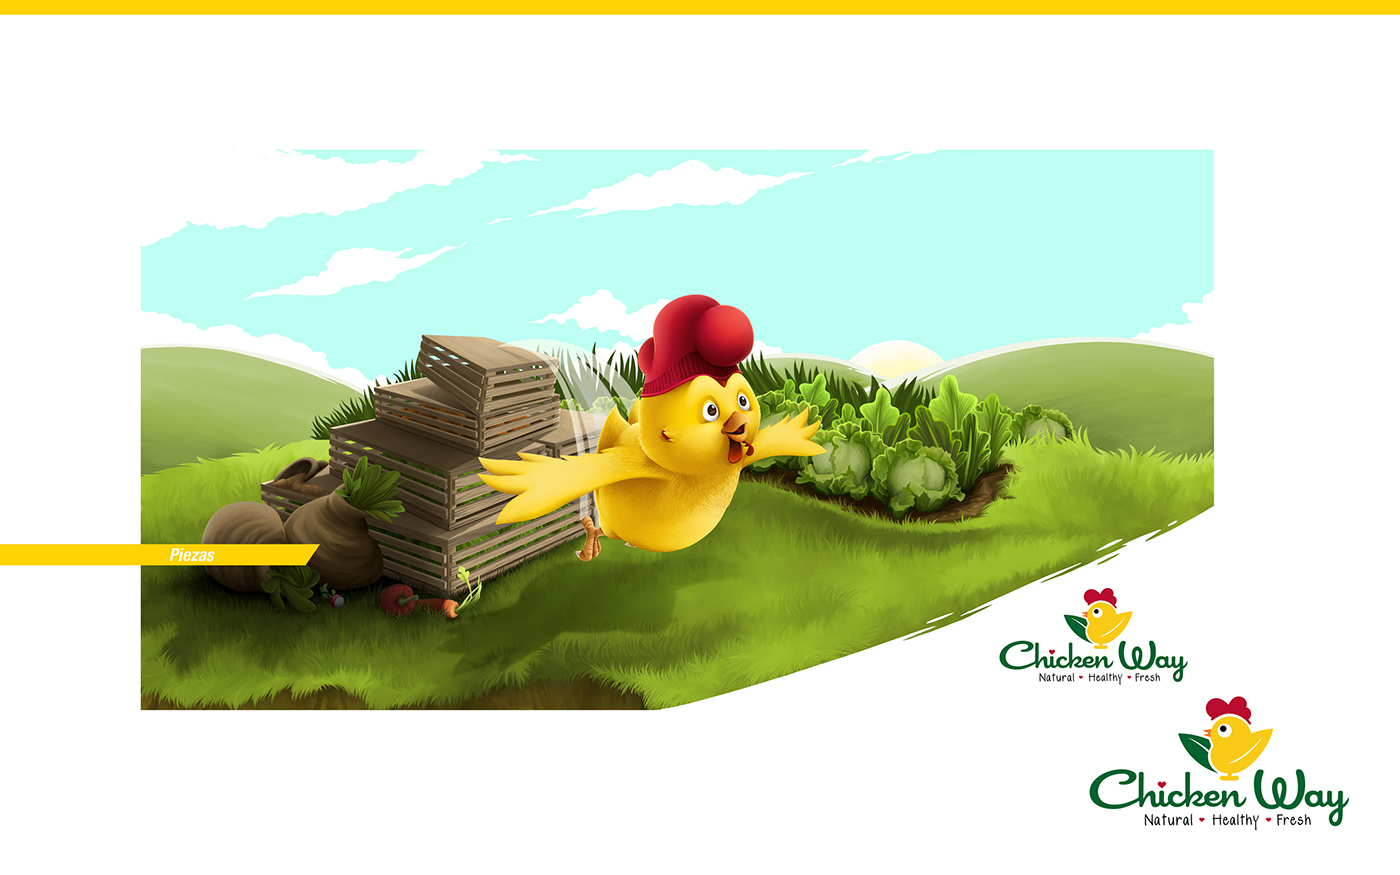 CW chicken  chicken wilson caceres pollo colombia diseño Mascota Character personaje amarillo animal brand logo united states